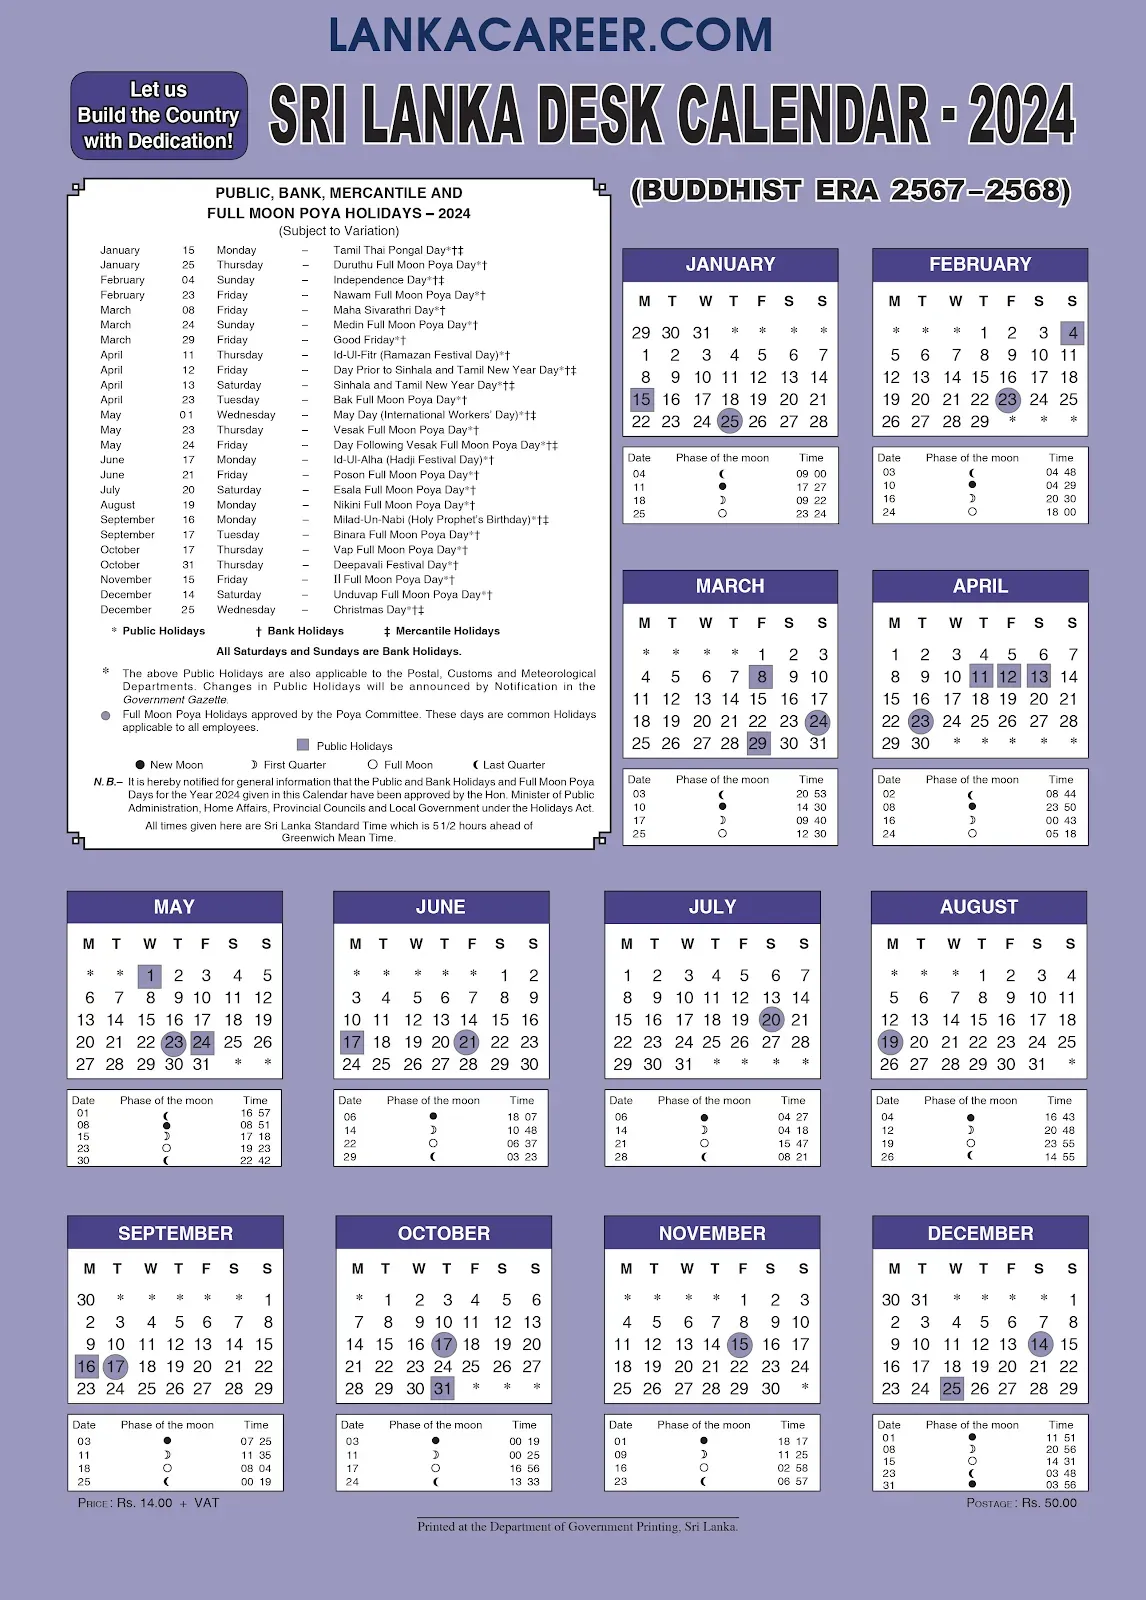 Sri Lanka Calendar 2024 with holidays Lanka Career Job Vacancies